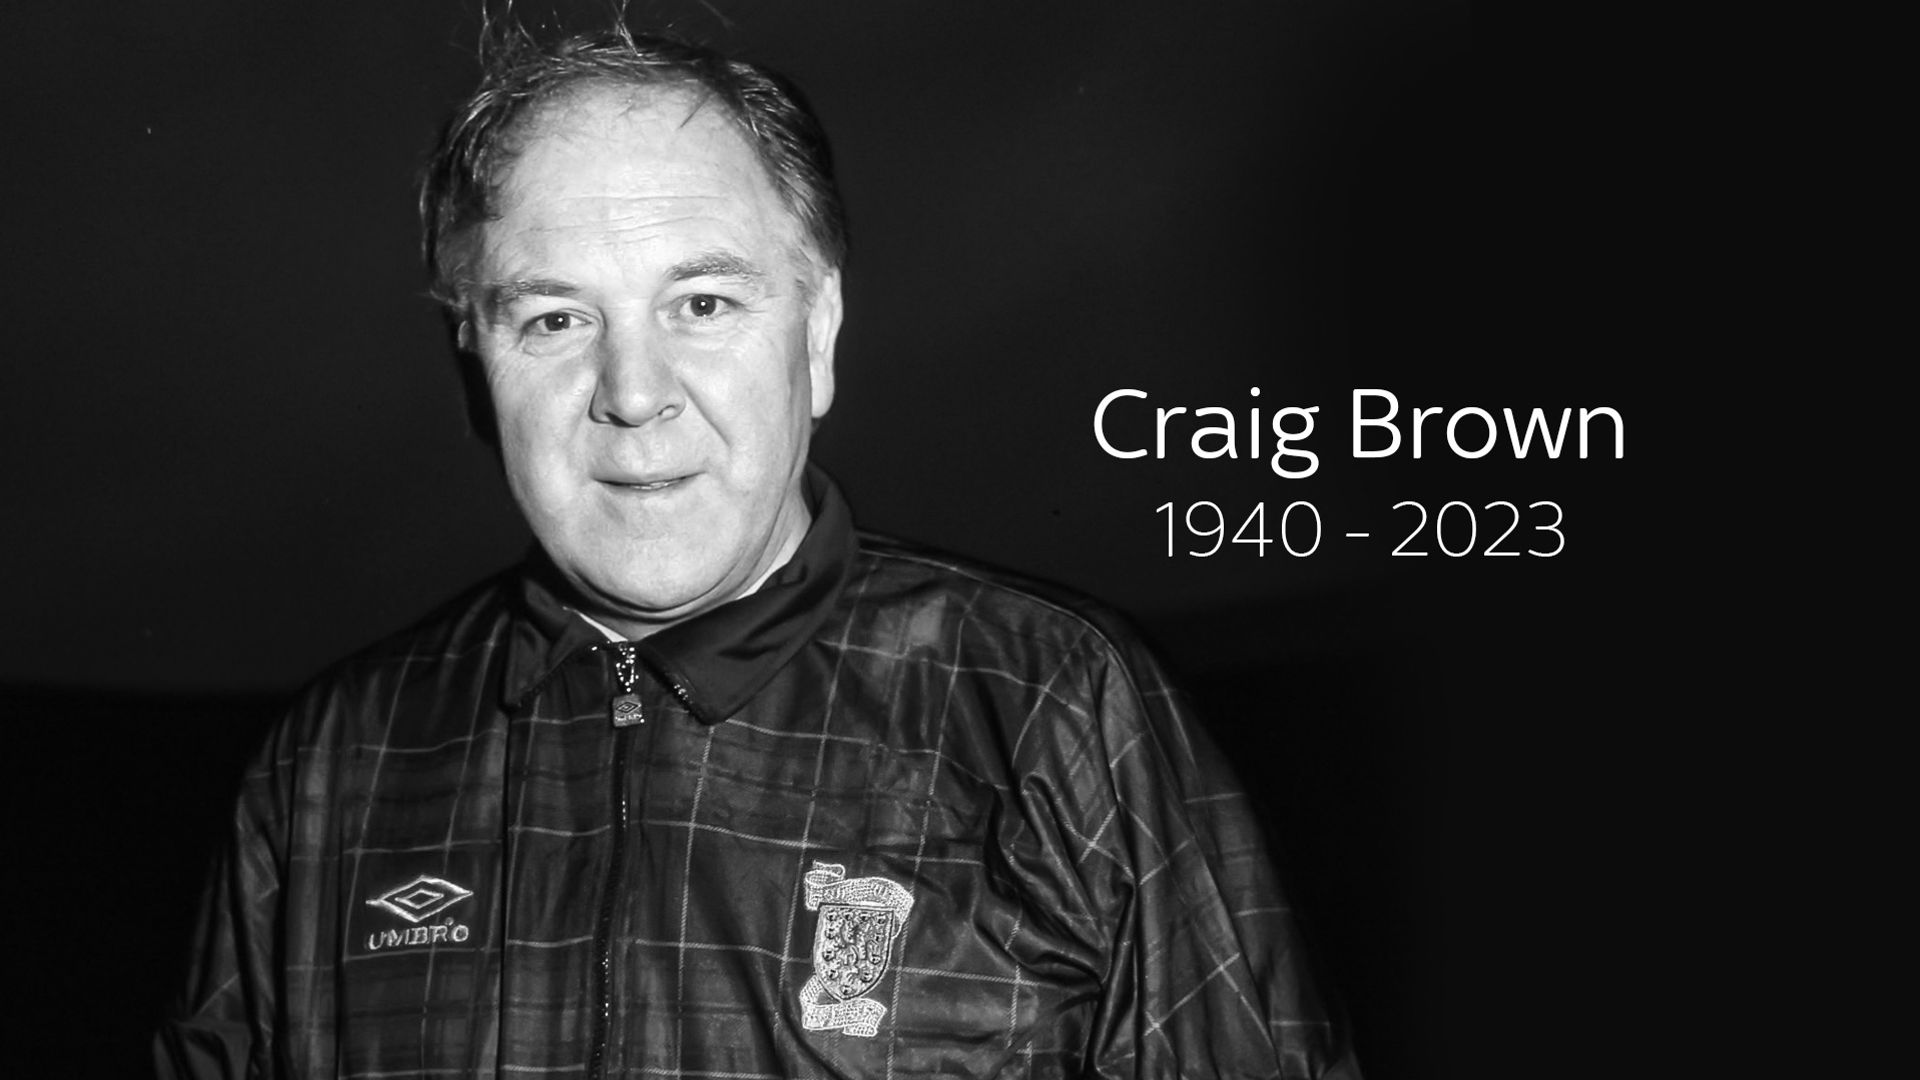 Scotland legend Craig Brown dies aged 82